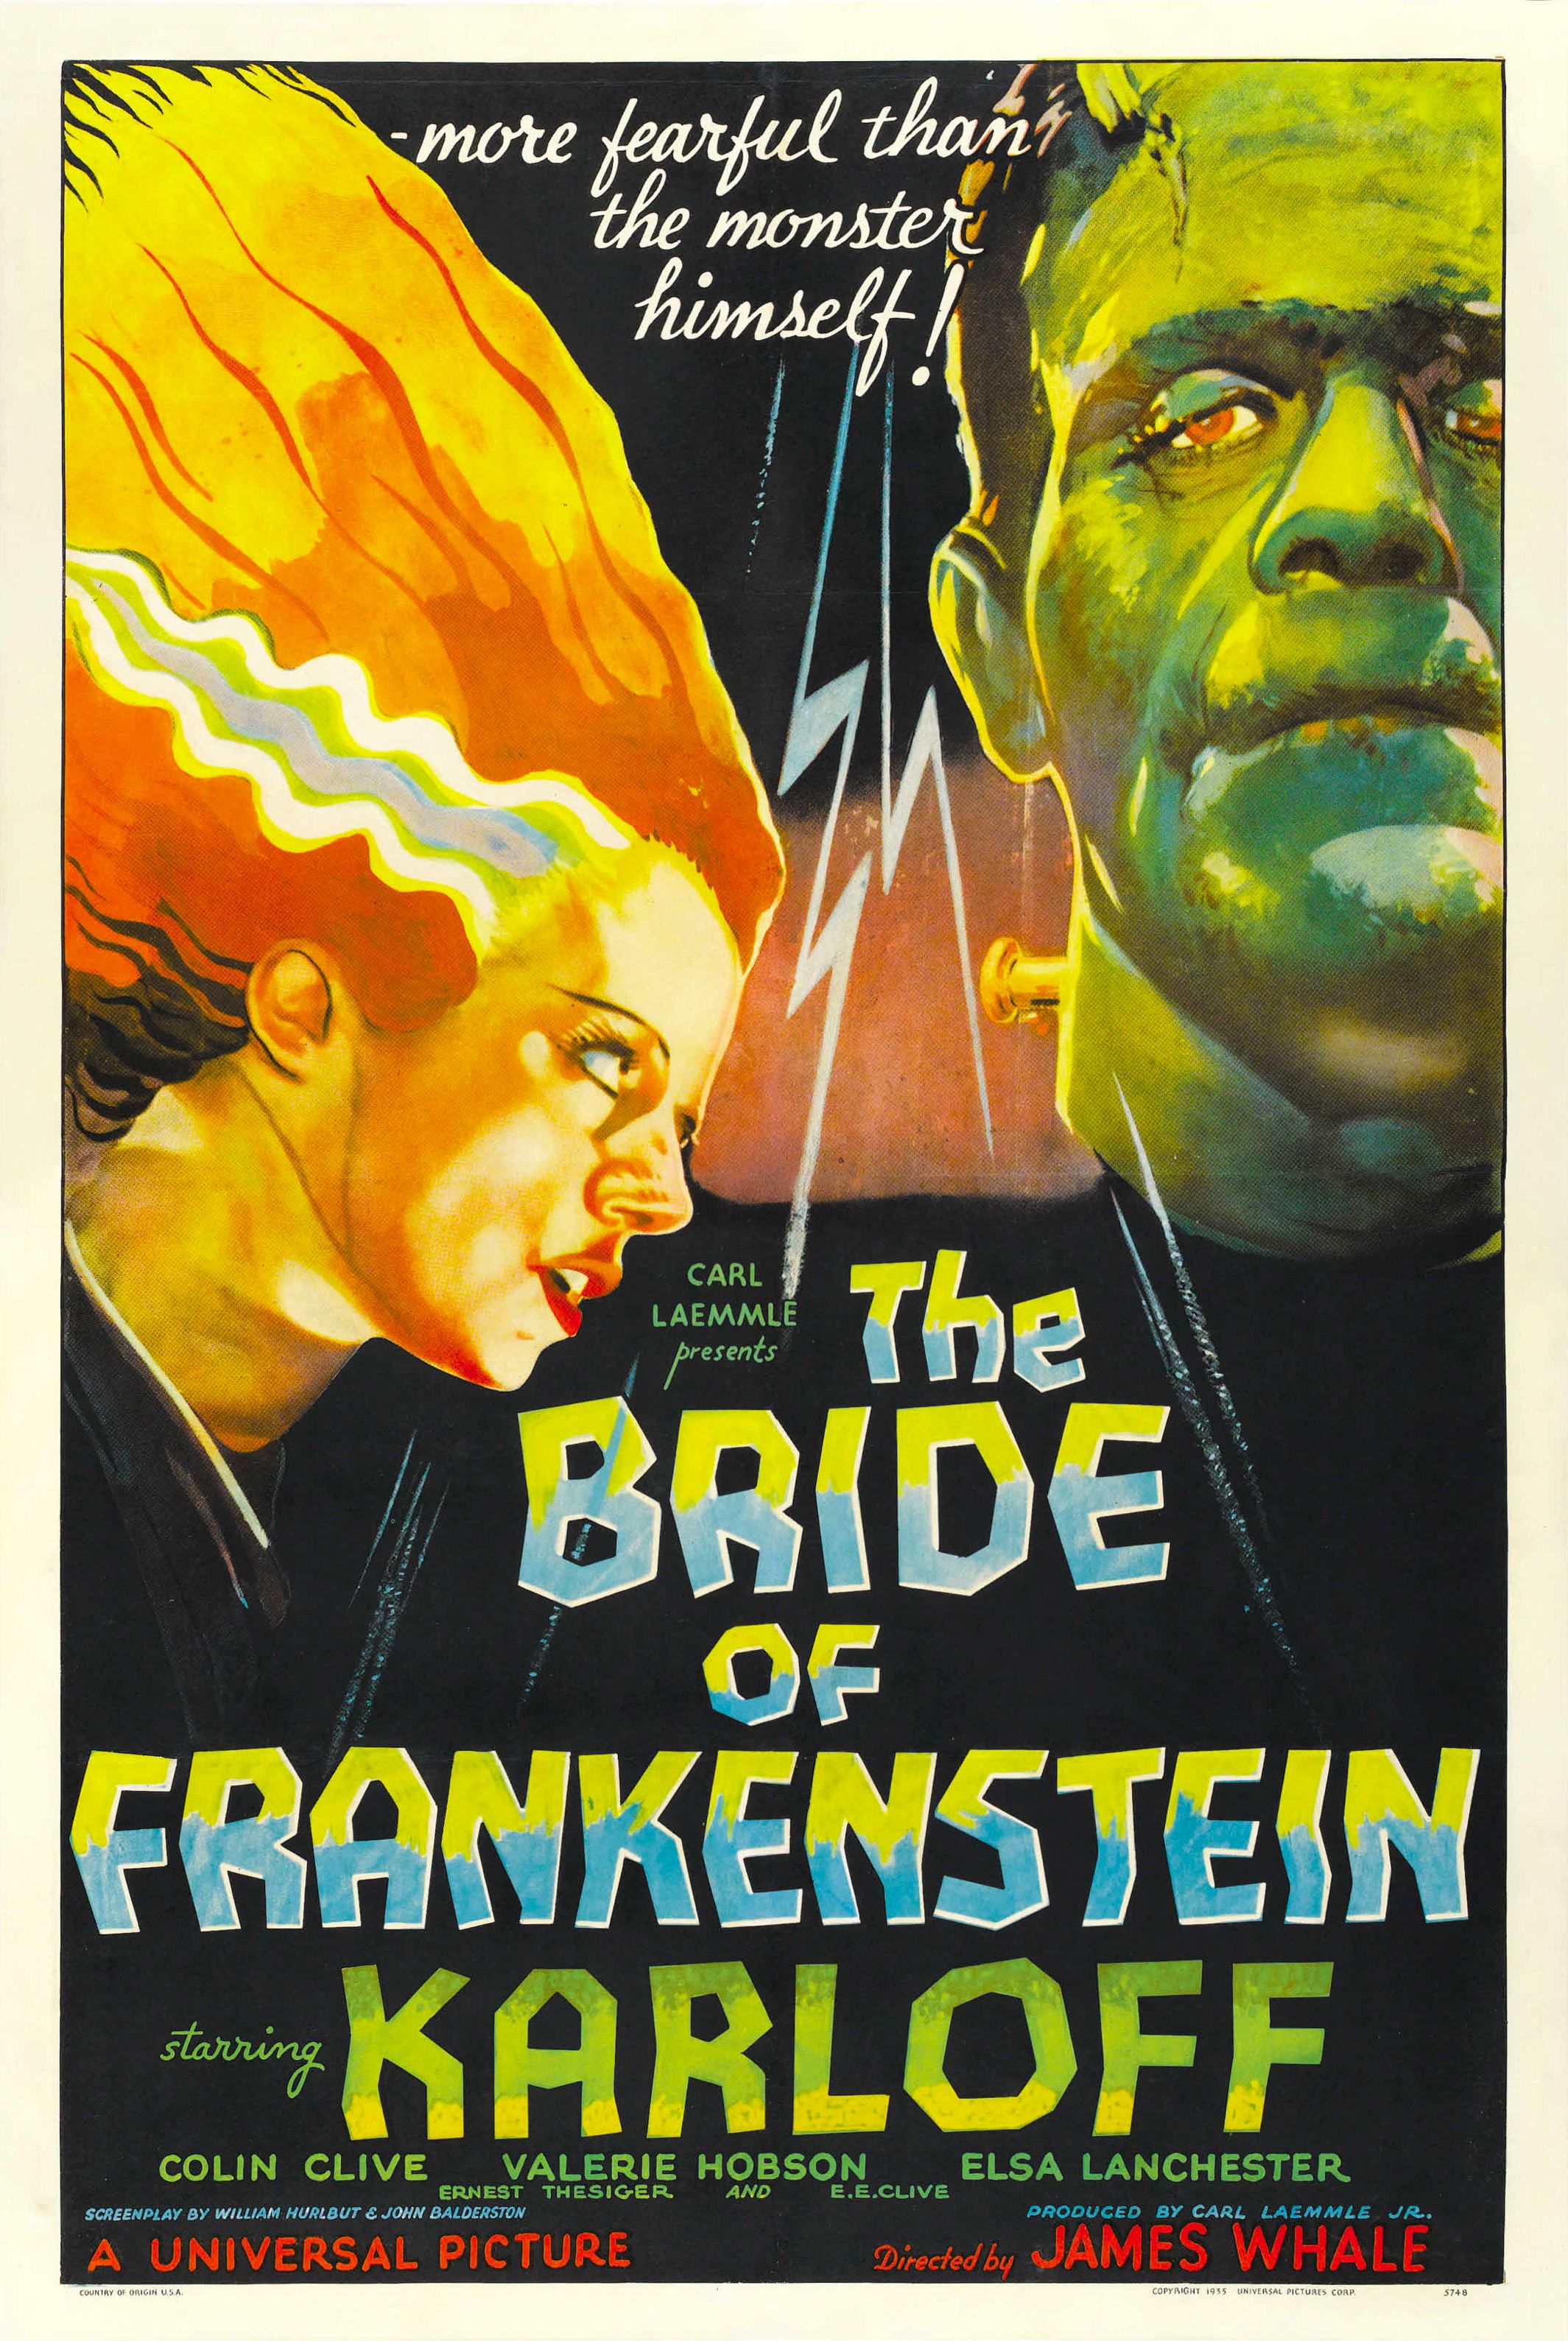 The Bride of Frankenstein movie poster